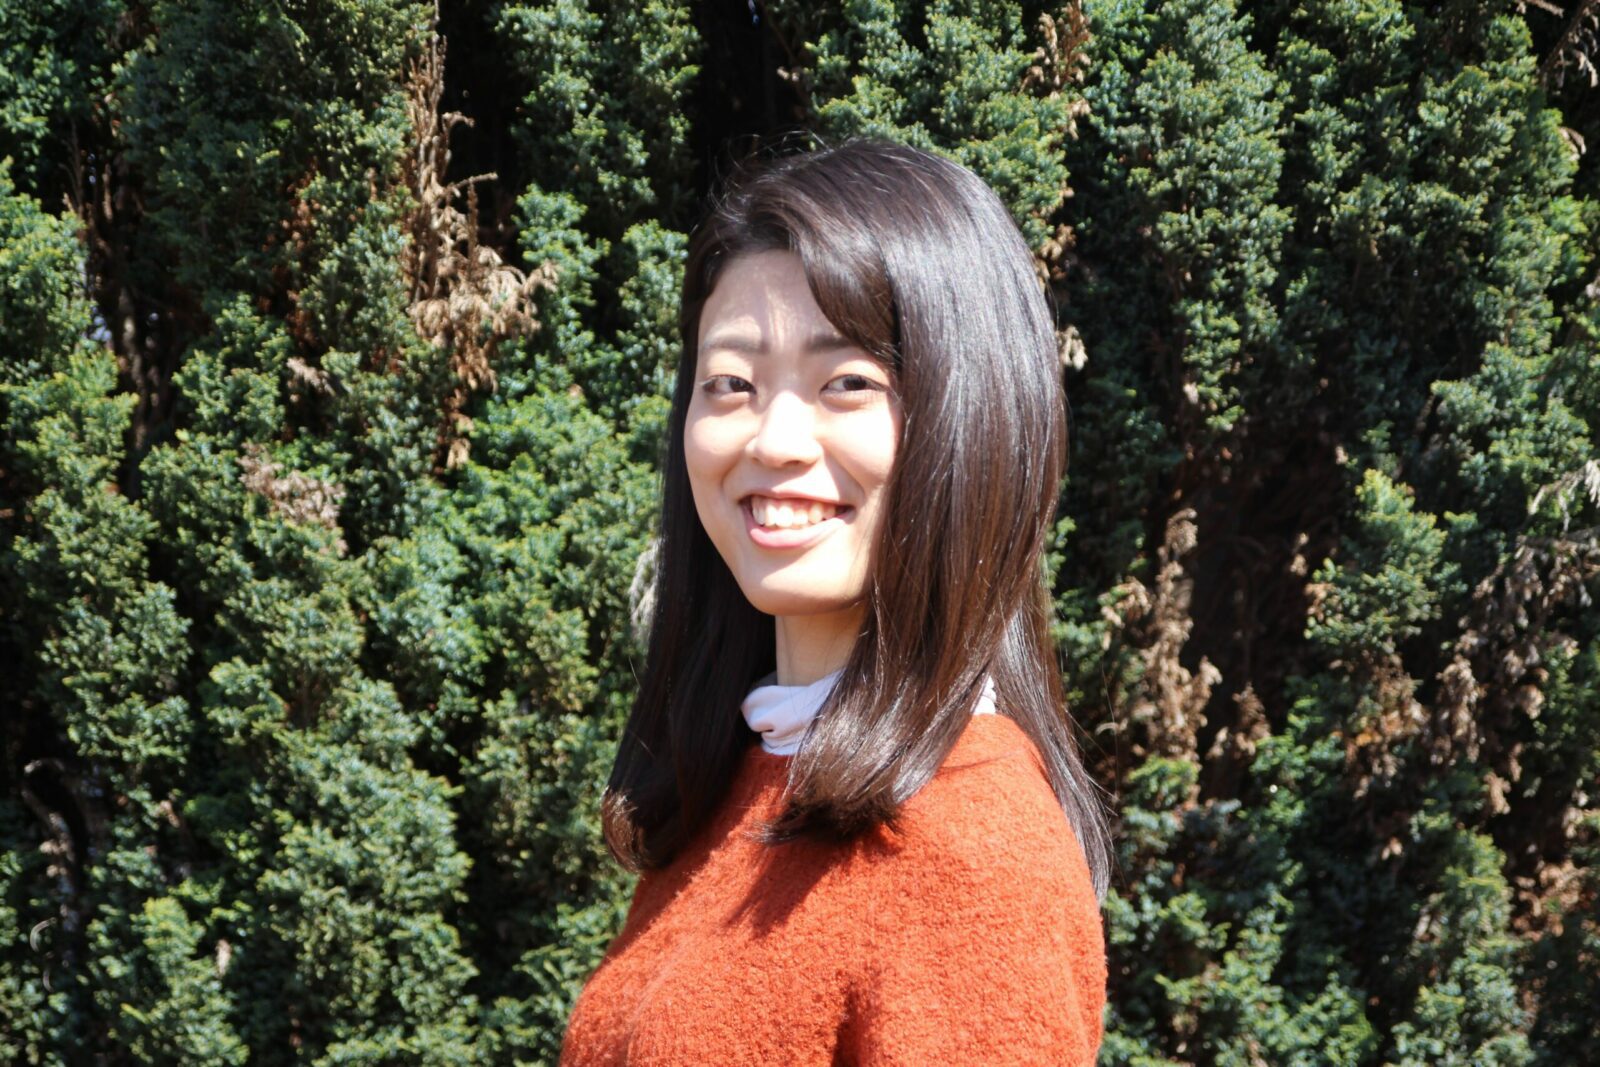 4. Nanami Sato